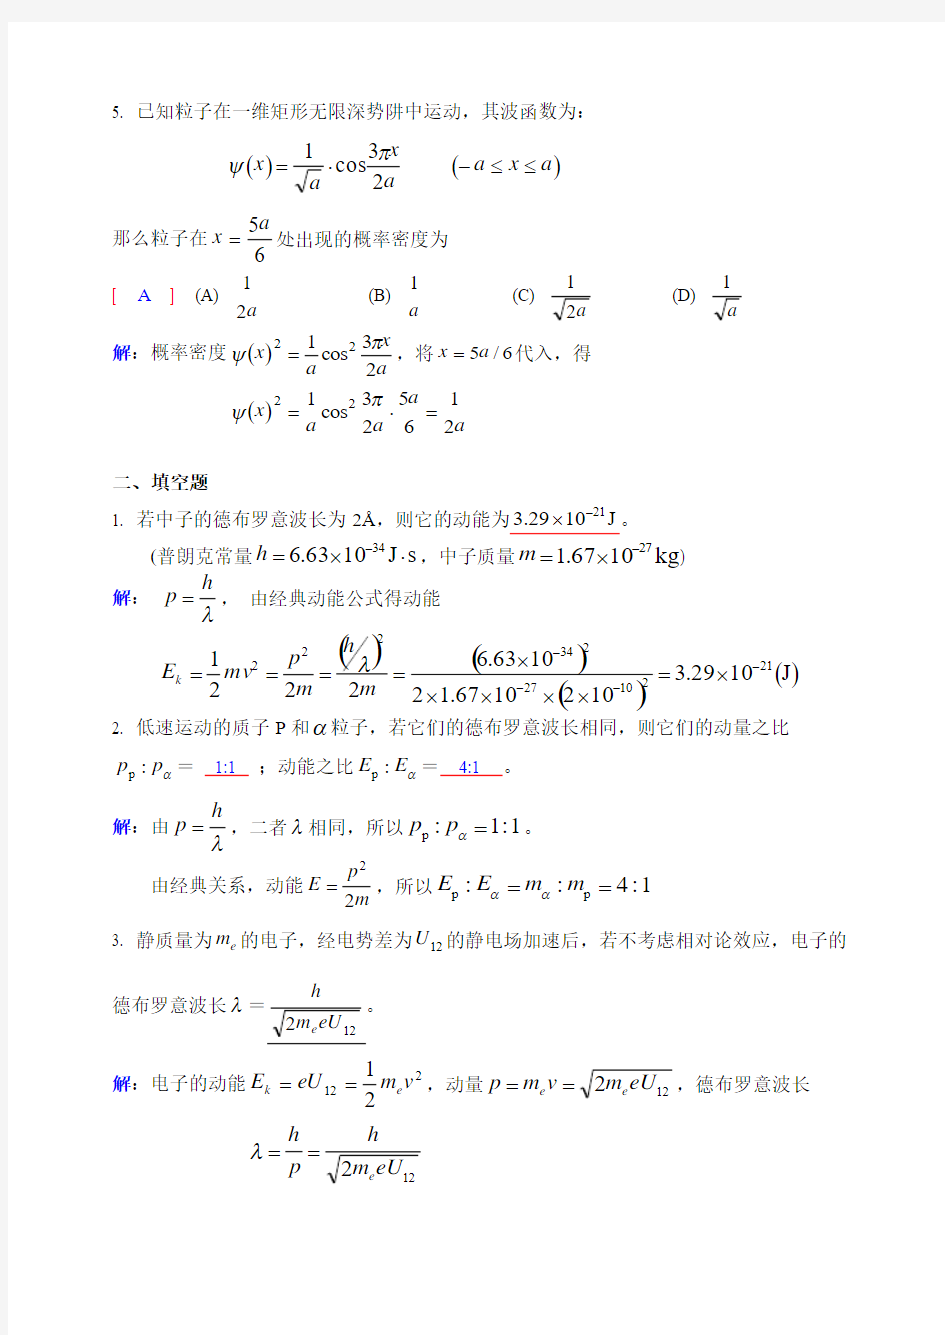 大学物理(下)   No.8作业解析